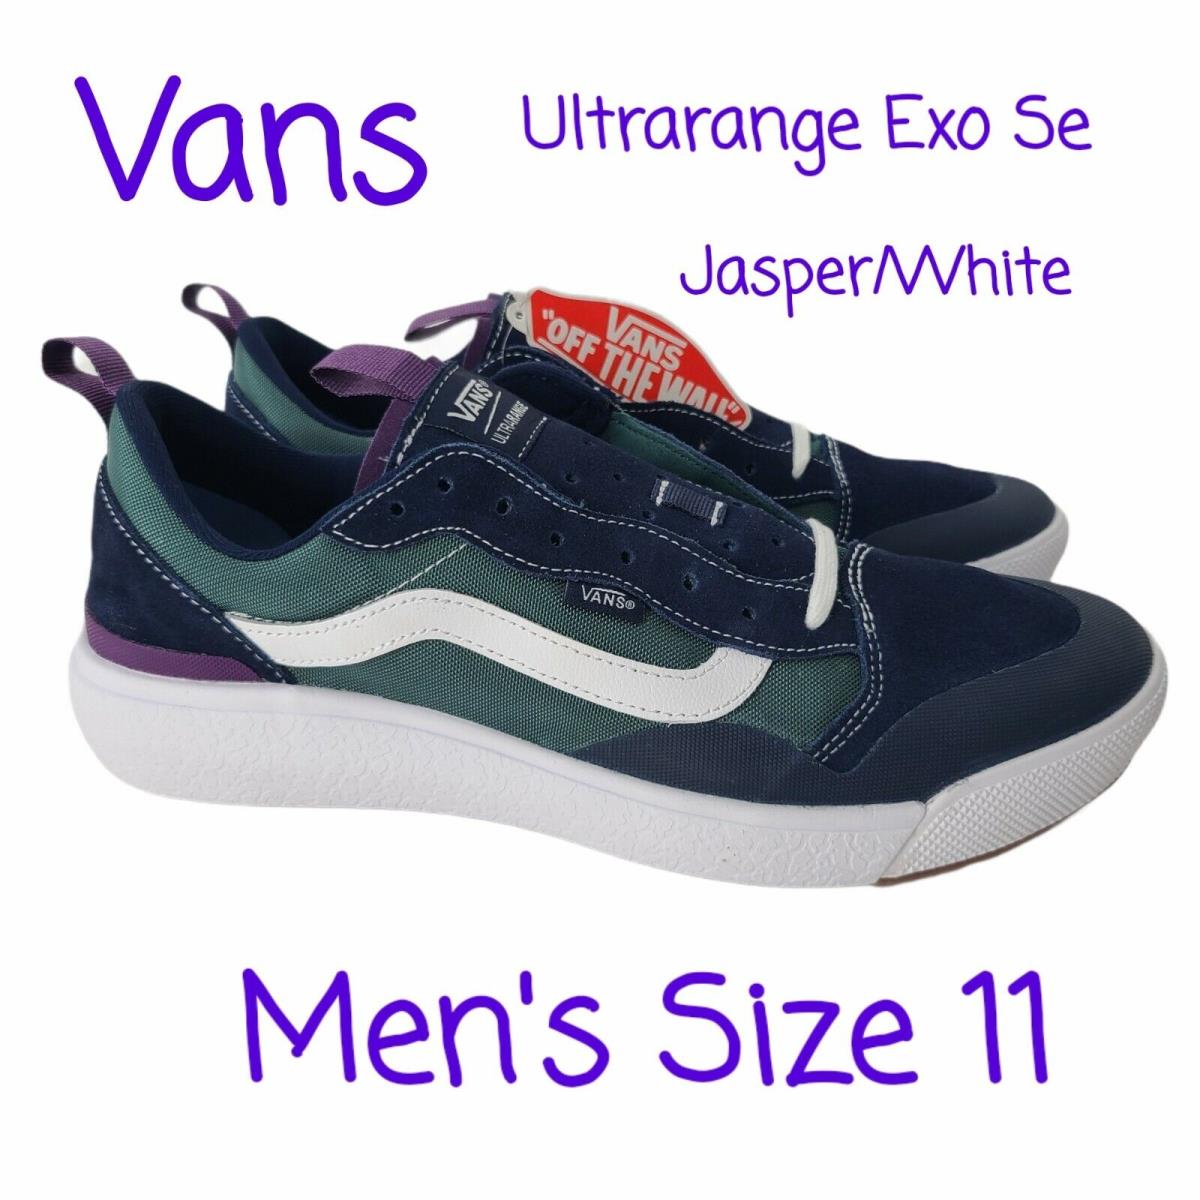 Vans Ultrarange Exo Se Sneaker Shoe Mens Size 11 Jasper Blue Green White